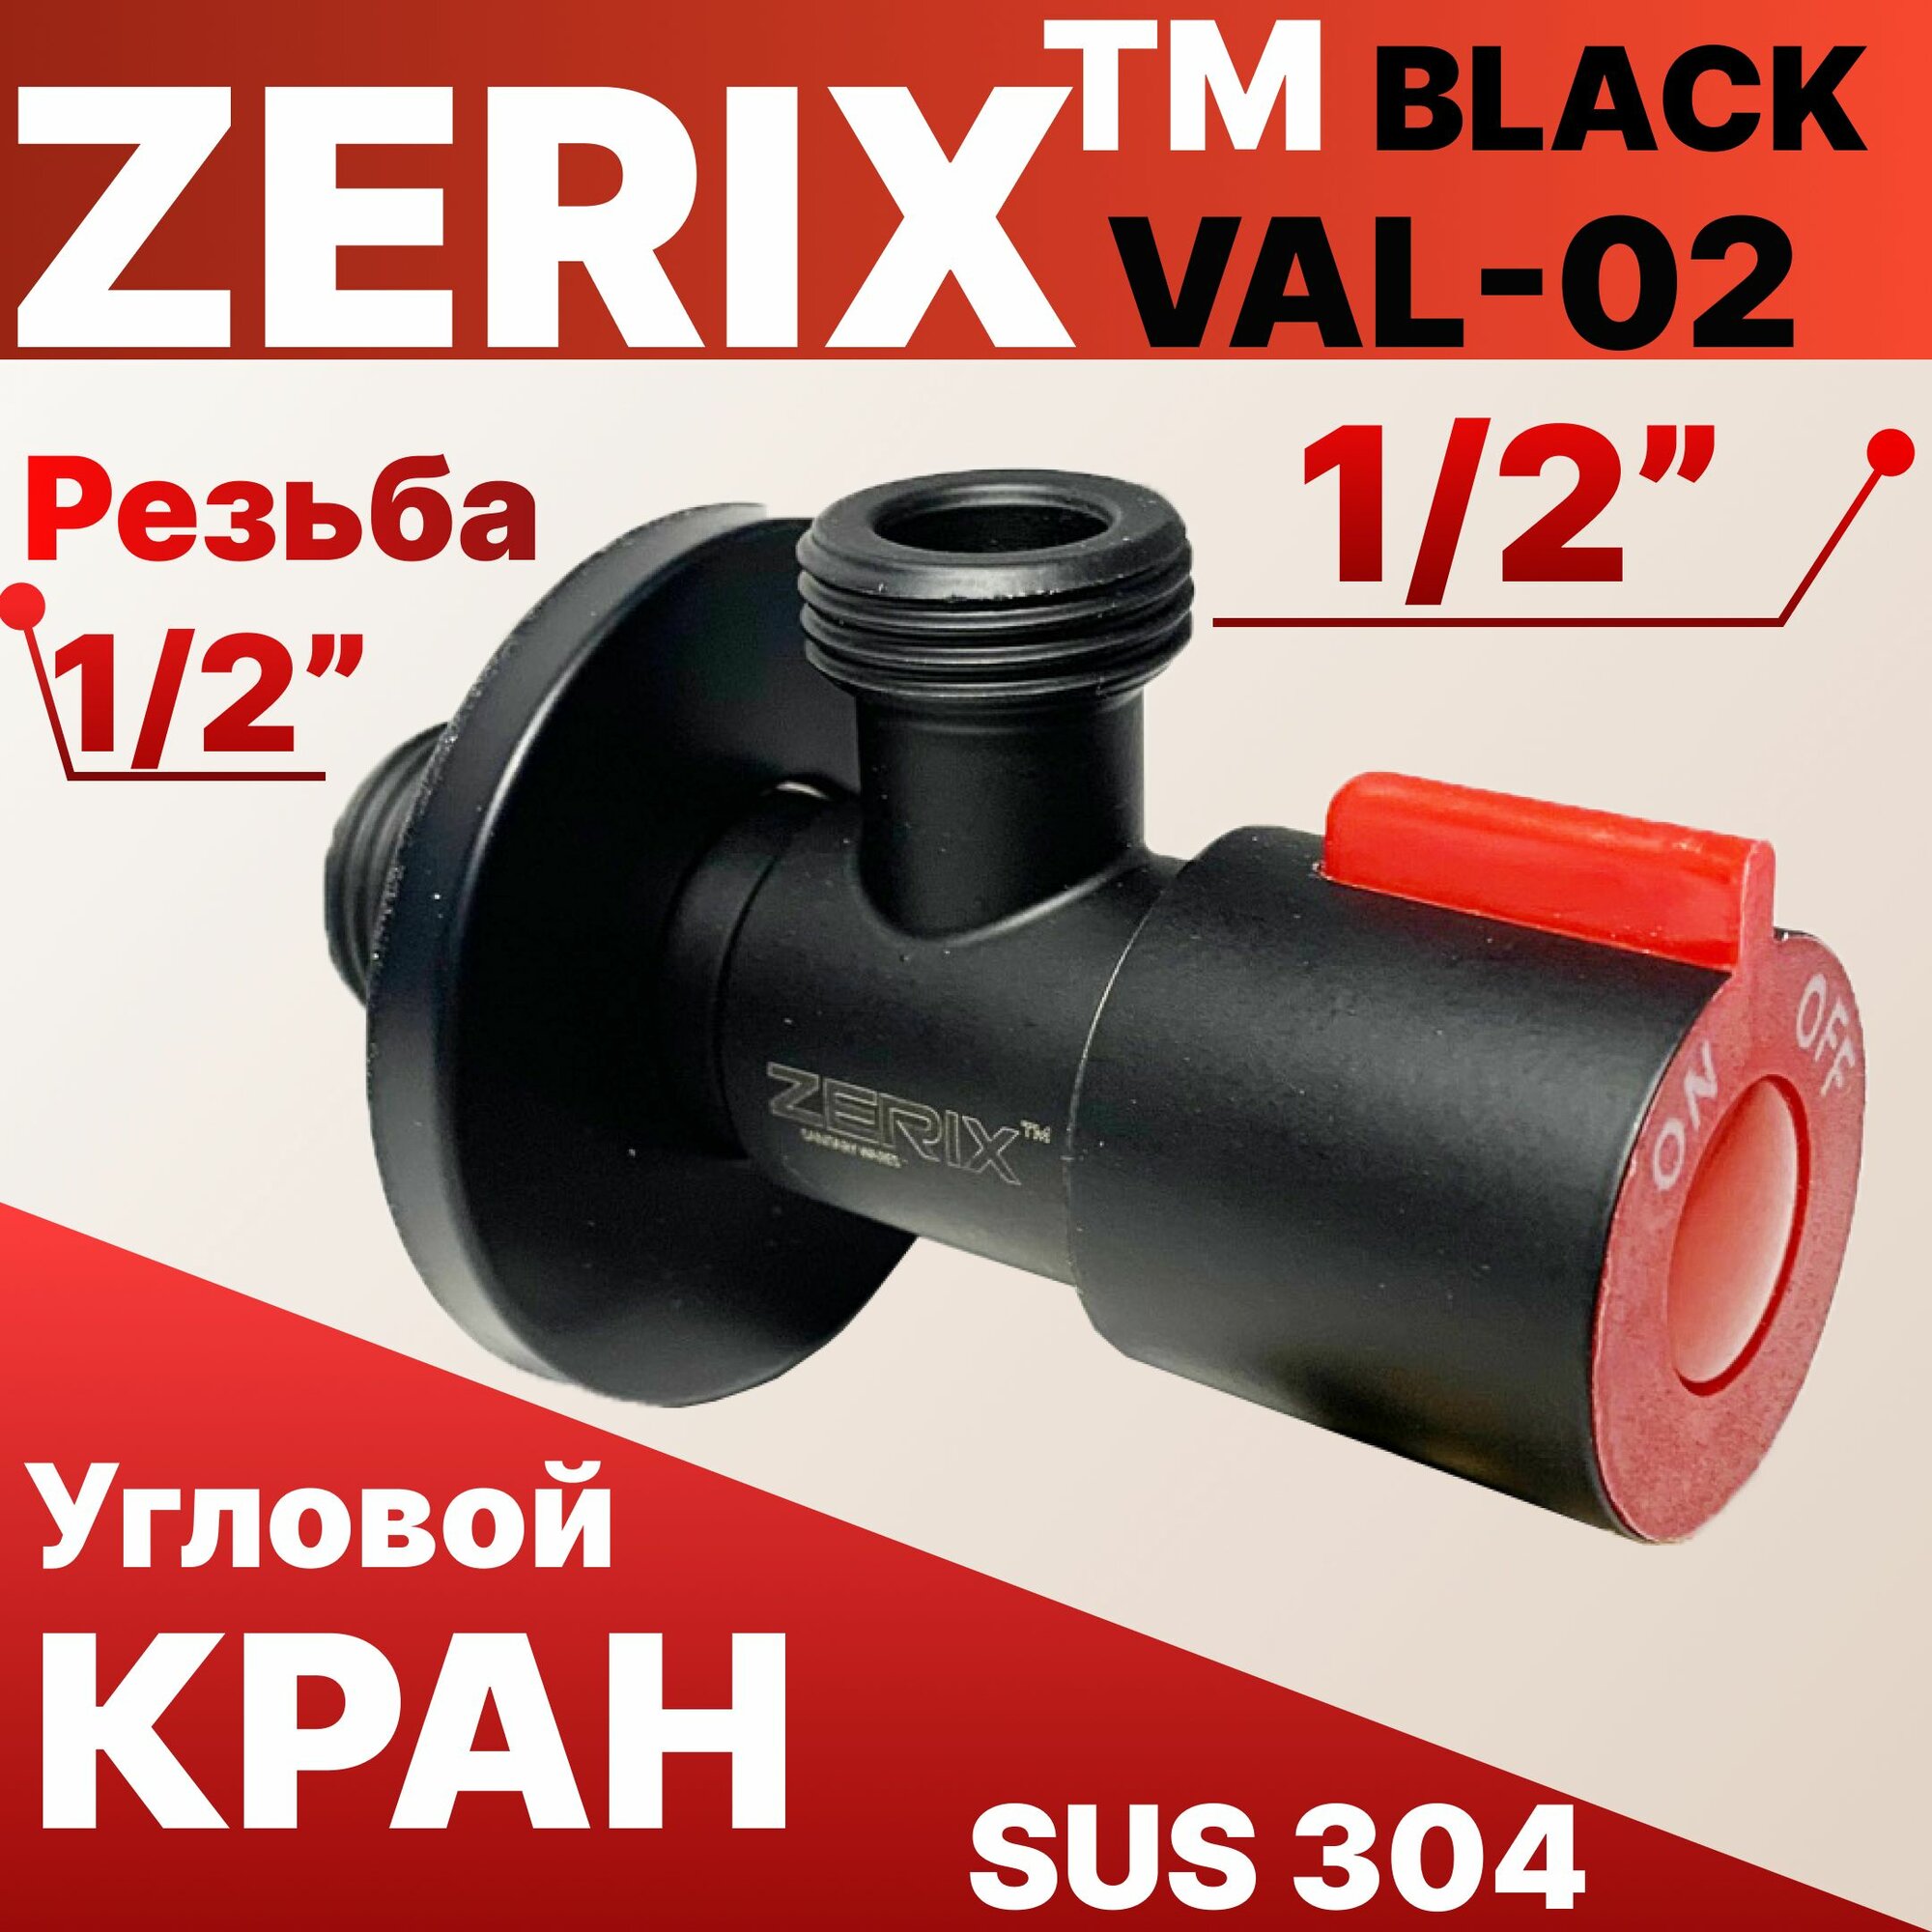 Кран угловой черный (красный) 1/2" 3/4" VAL-02-ZERIX